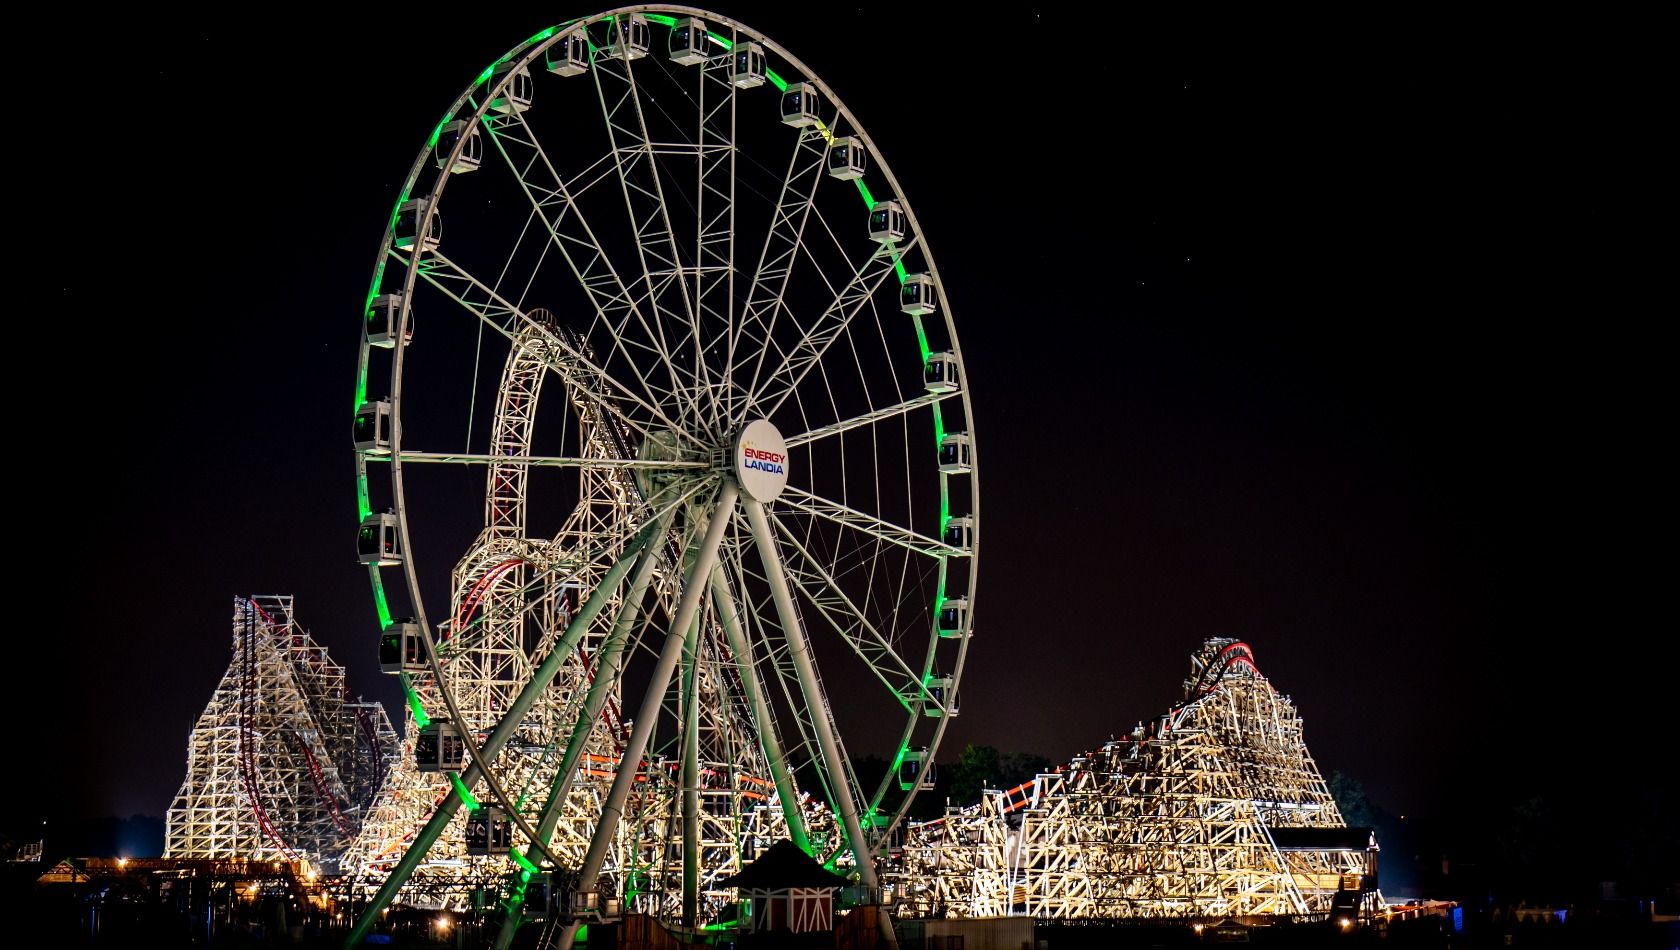 Das Riesenrad Wonder Wheel in Energylandia bei Nacht